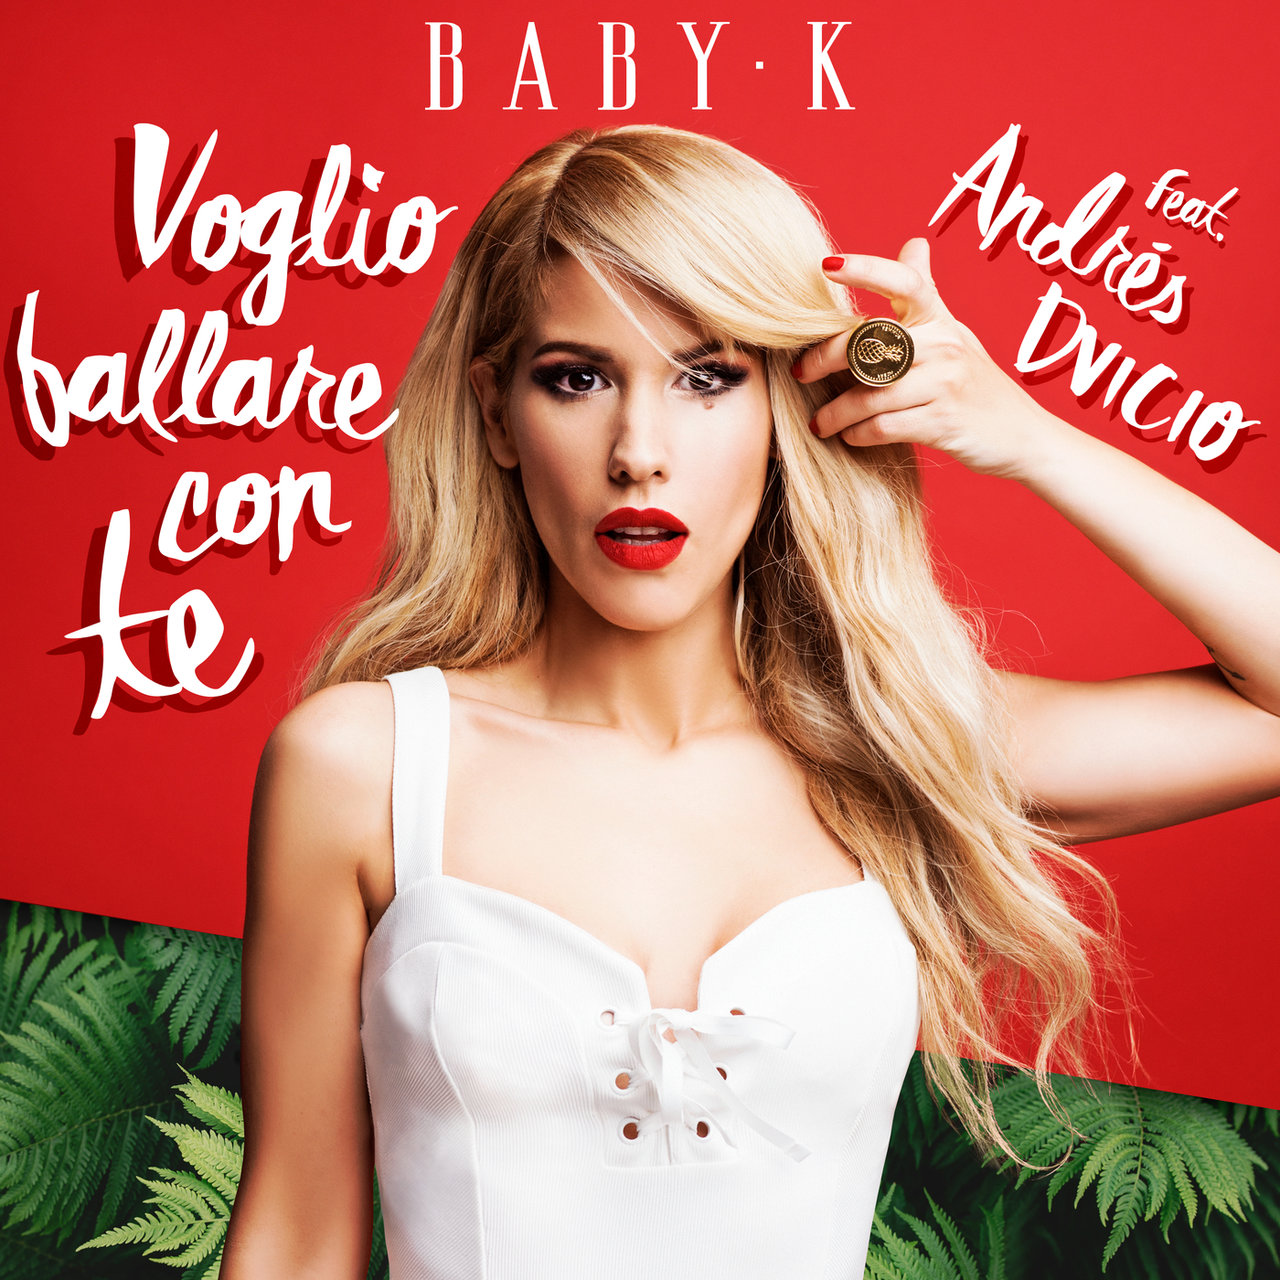 Baby K ft. featuring Andrés Dvicio Voglio ballare con te cover artwork